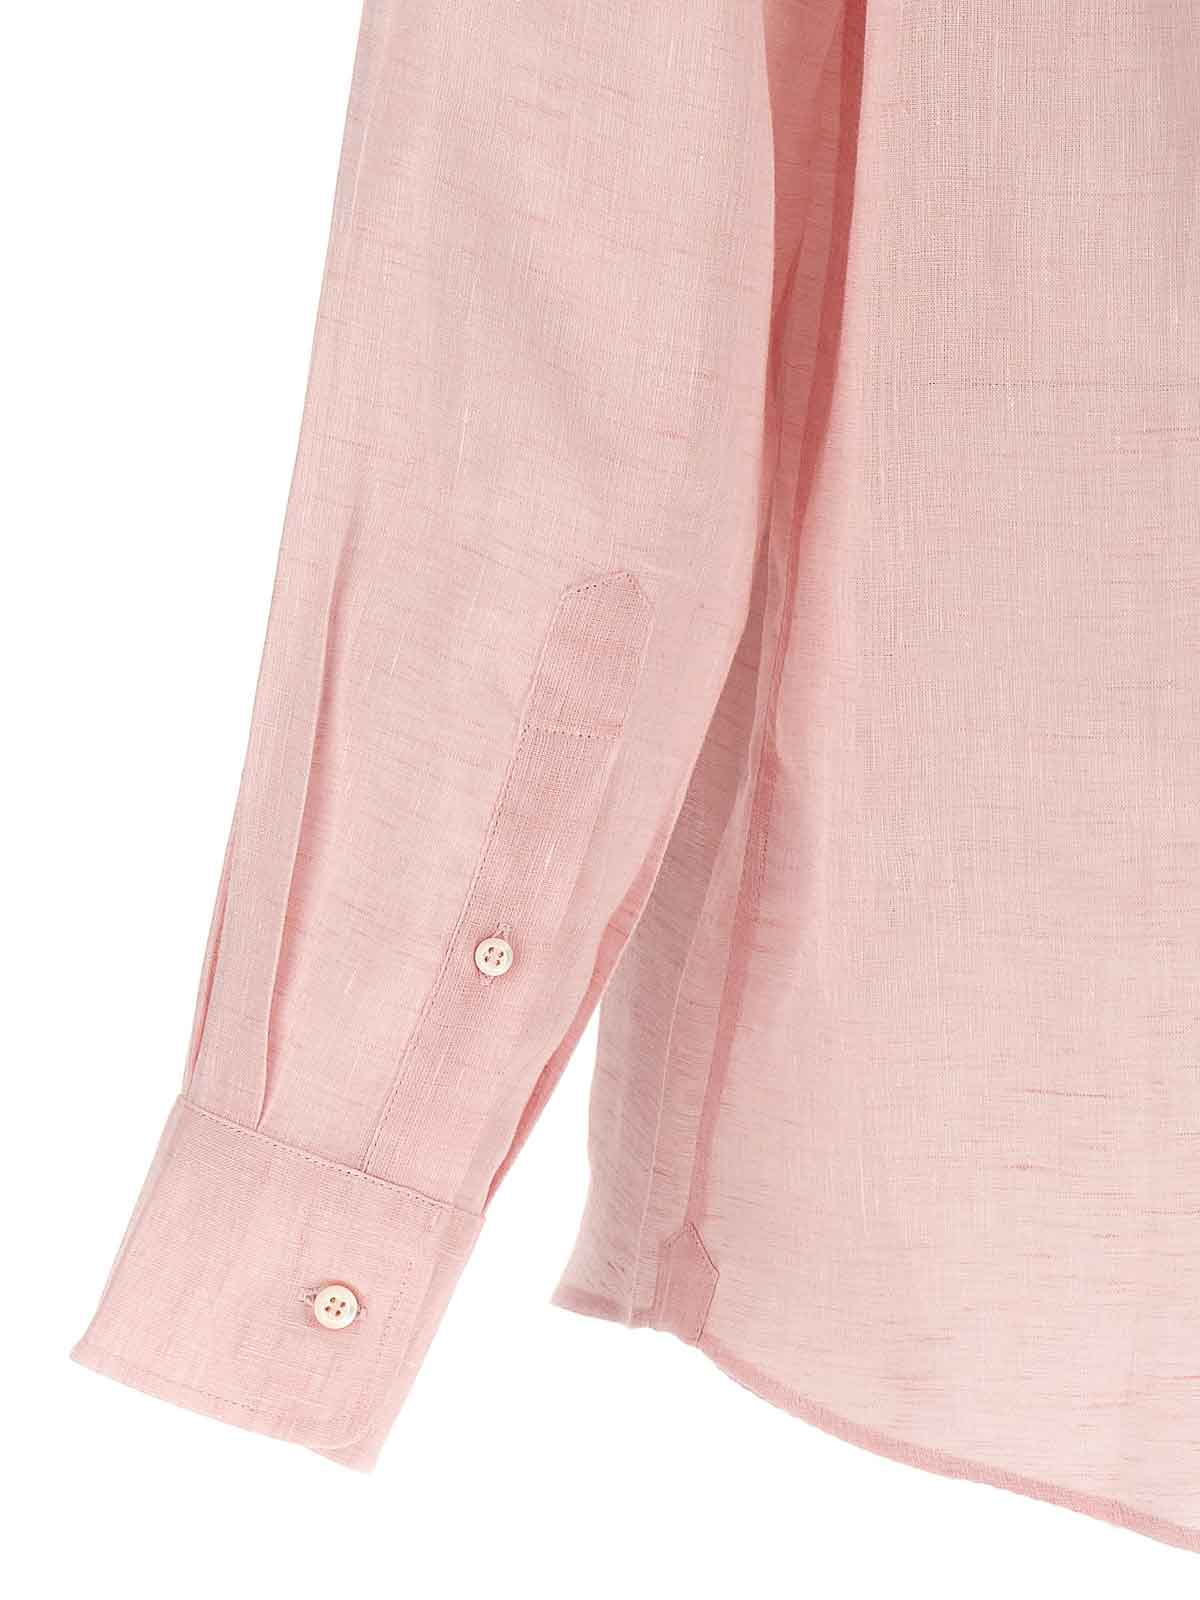 Shop Brunello Cucinelli Linen Shirt Button In Color Carne Y Neutral